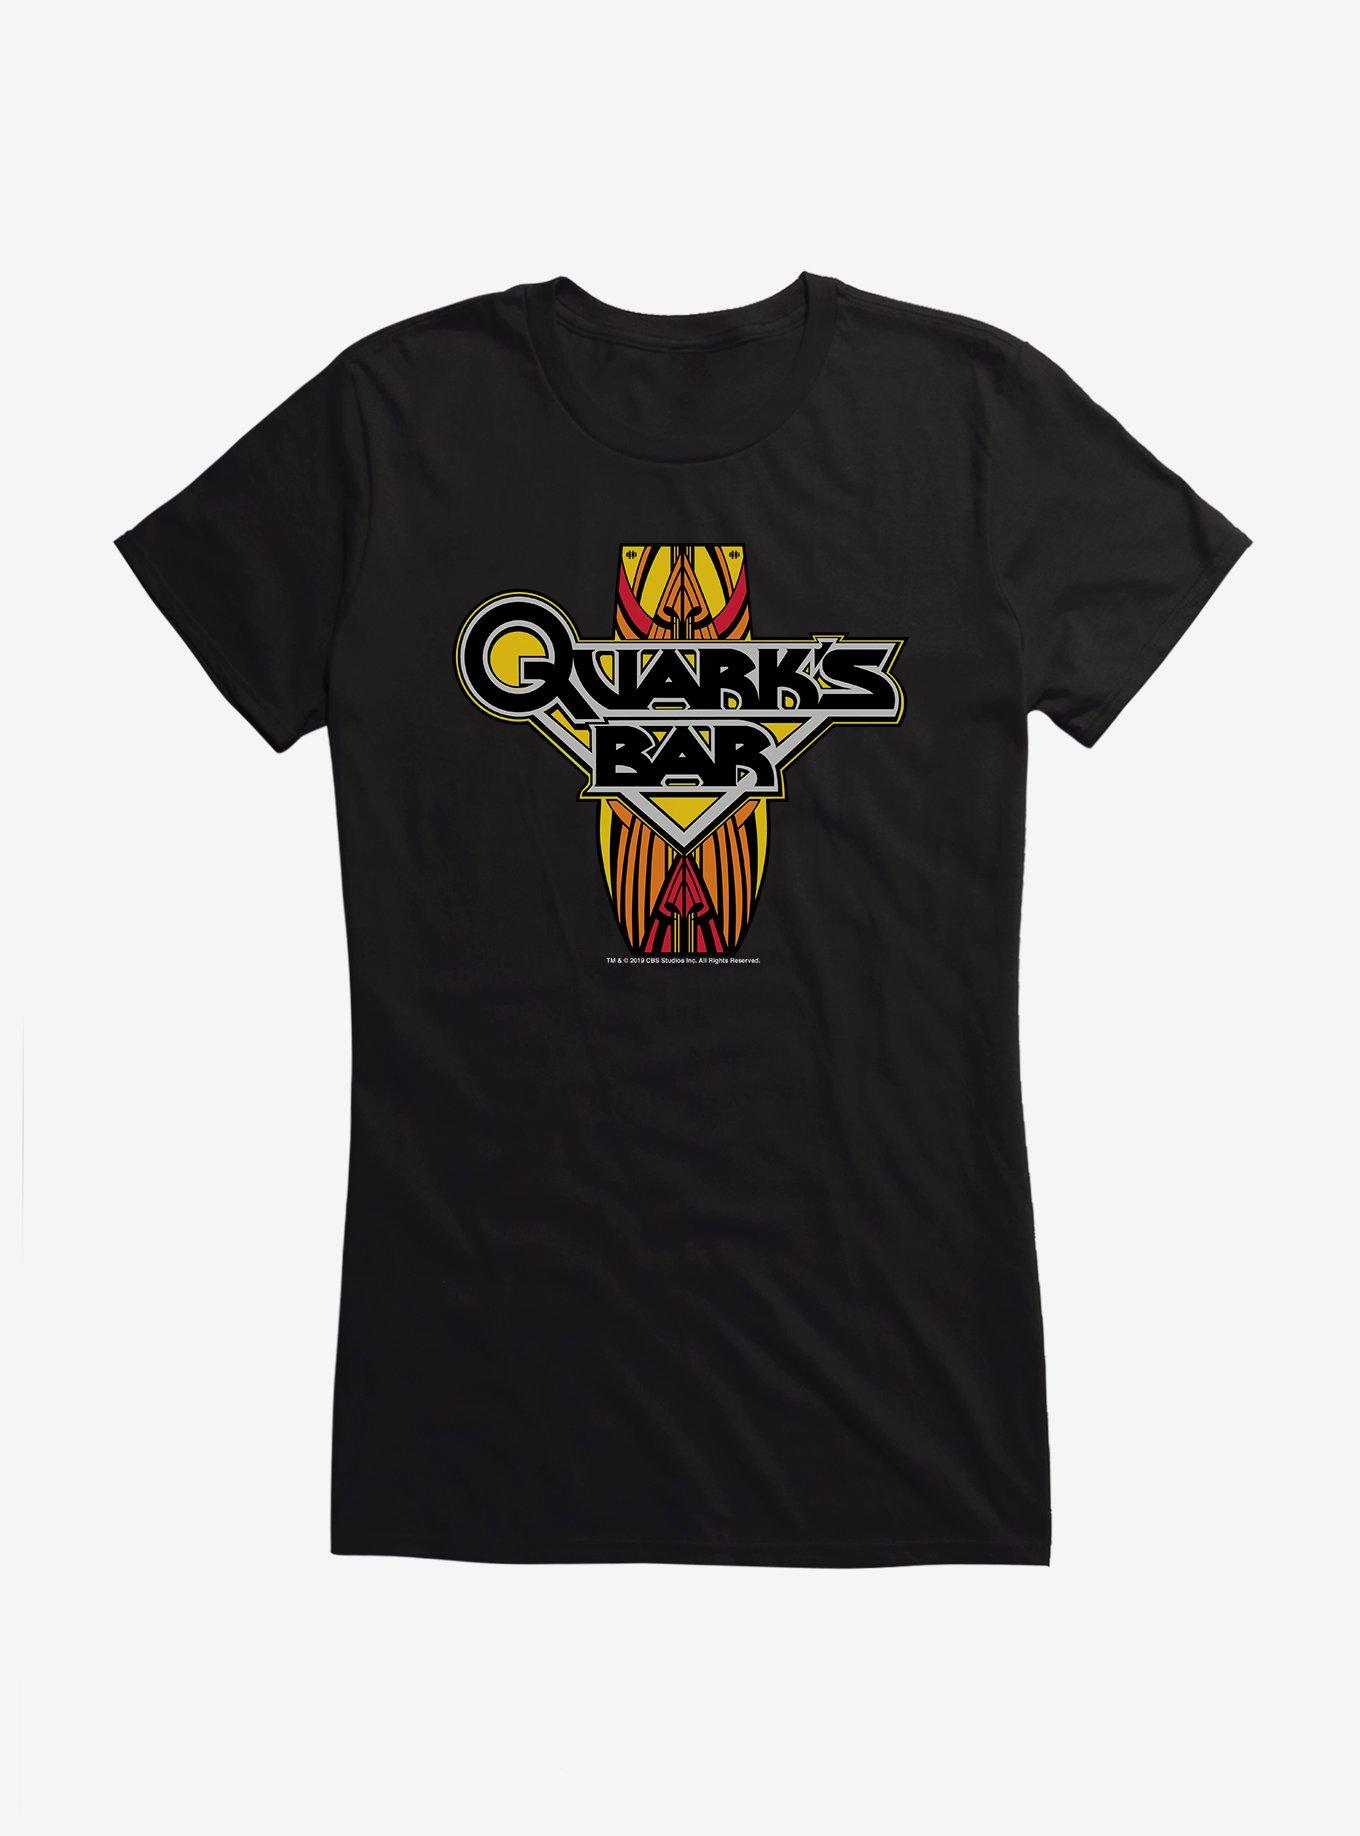 Star Trek Deep Space 9 Quarks Bar Girls T-Shirt, , hi-res